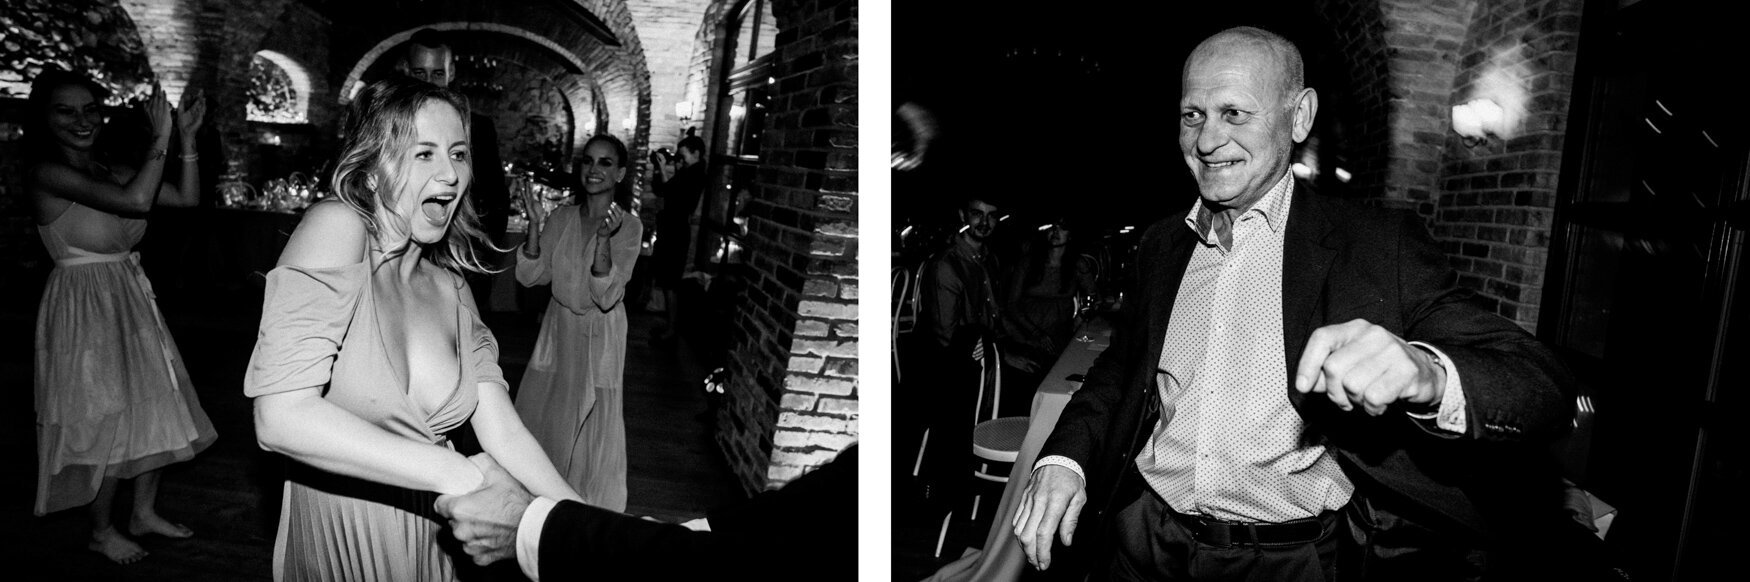 k&o3 blogger urban wedding with rustic reception 137.jpg